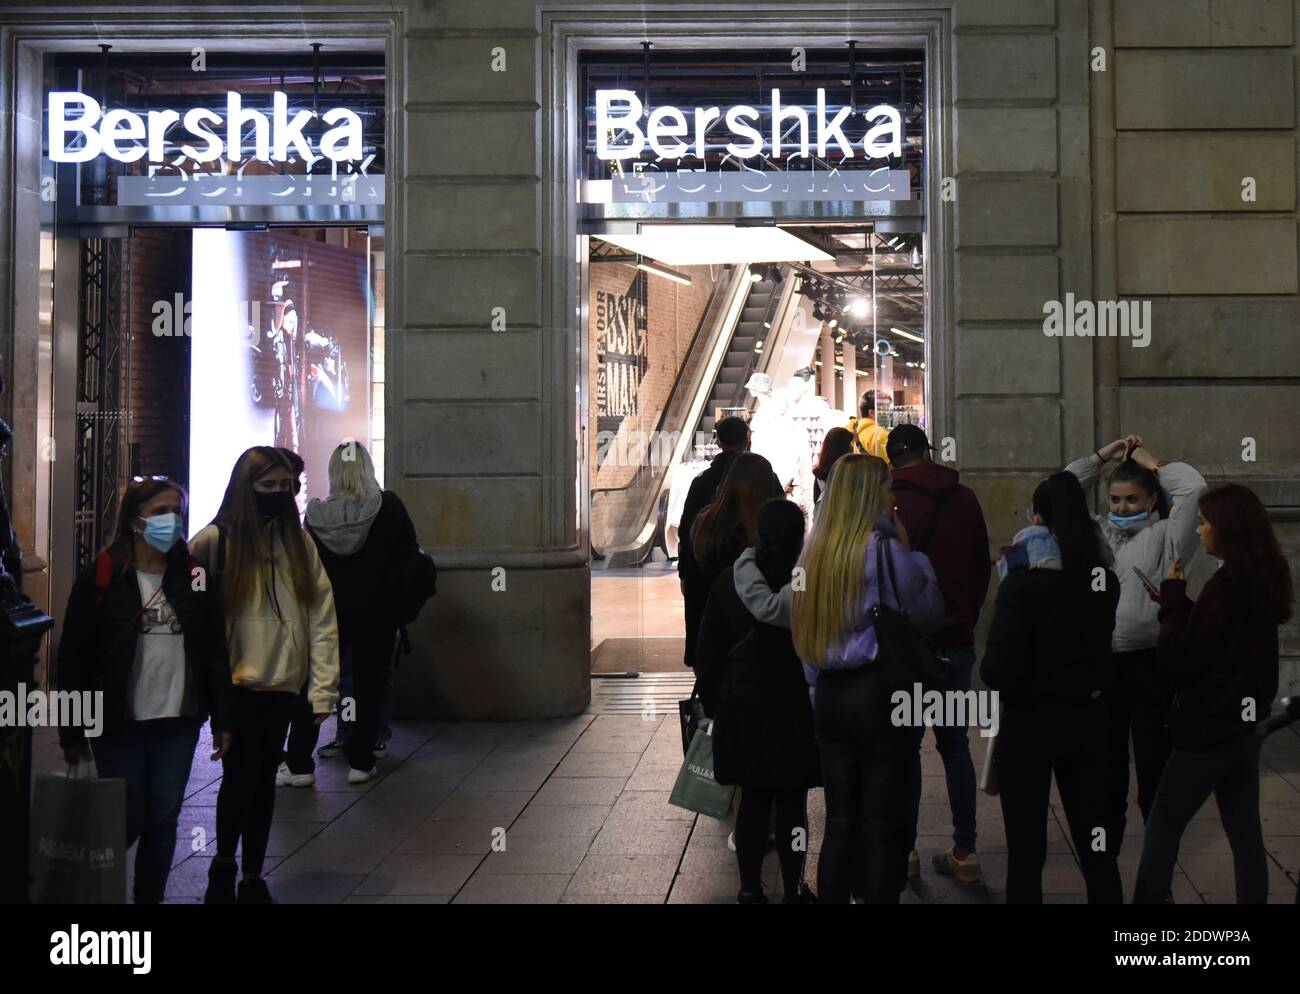 La gente coda fuori di un negozio Bershka alla vigilia del Black Friday  Day, è uno degli eventi commerciali più importanti dell'anno in Spagna.  Quest'anno si prevede un importante calo delle vendite